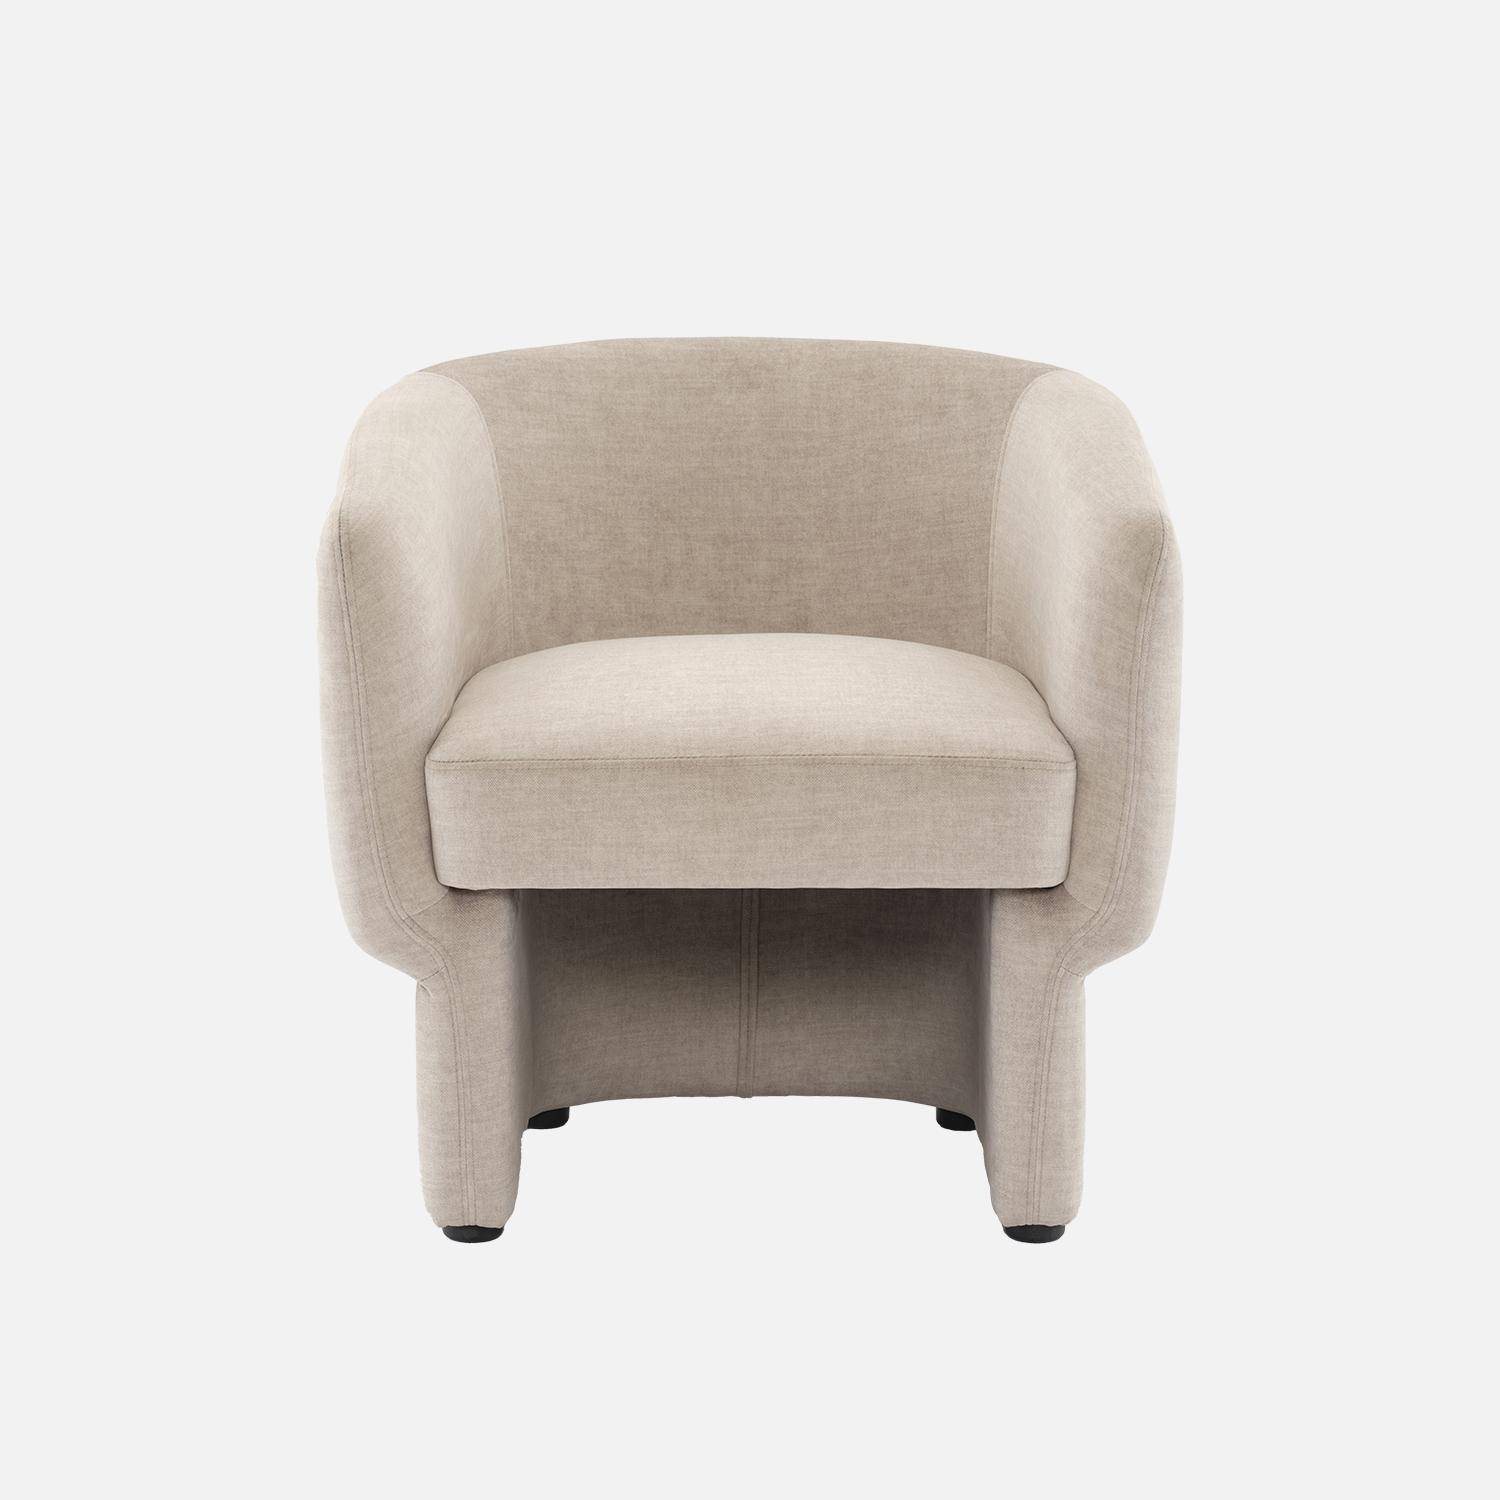 Beige stoffen fauteuil, Dolce, L 70 x P 70 x H 72cm, eucalyptushouten structuur Photo4